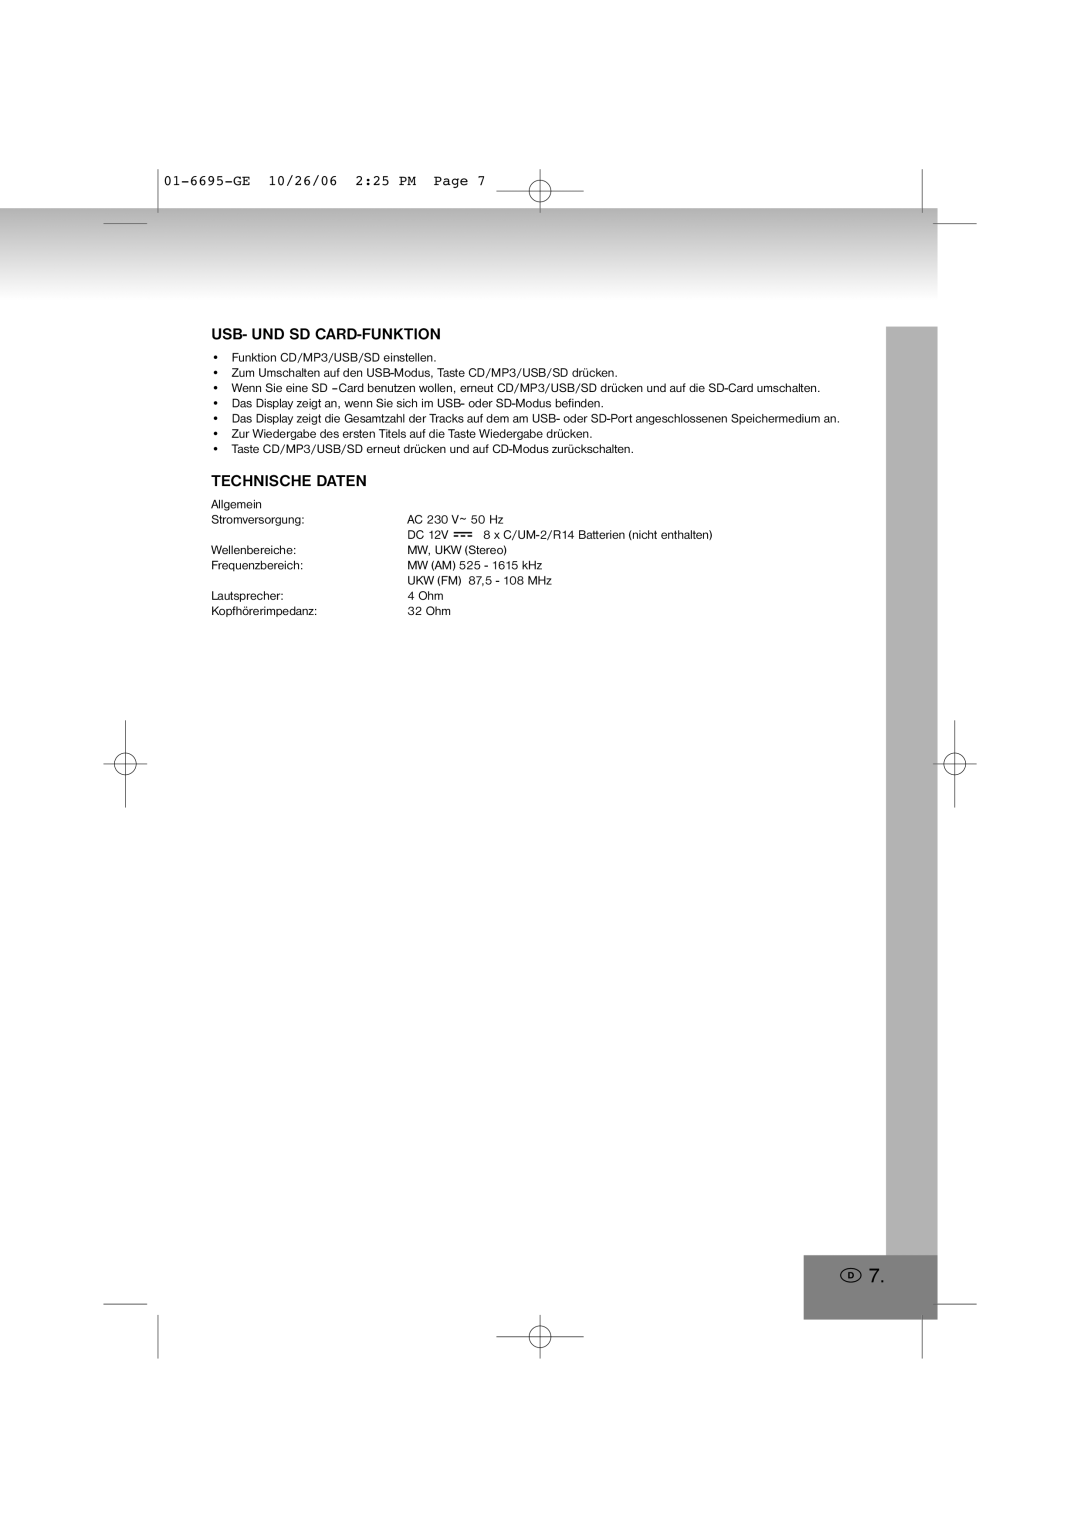 Elta manual Usb- Und Sd Card-Funktion, Technische Daten, 01-6695-GE10/26/06 2 25 PM Page 